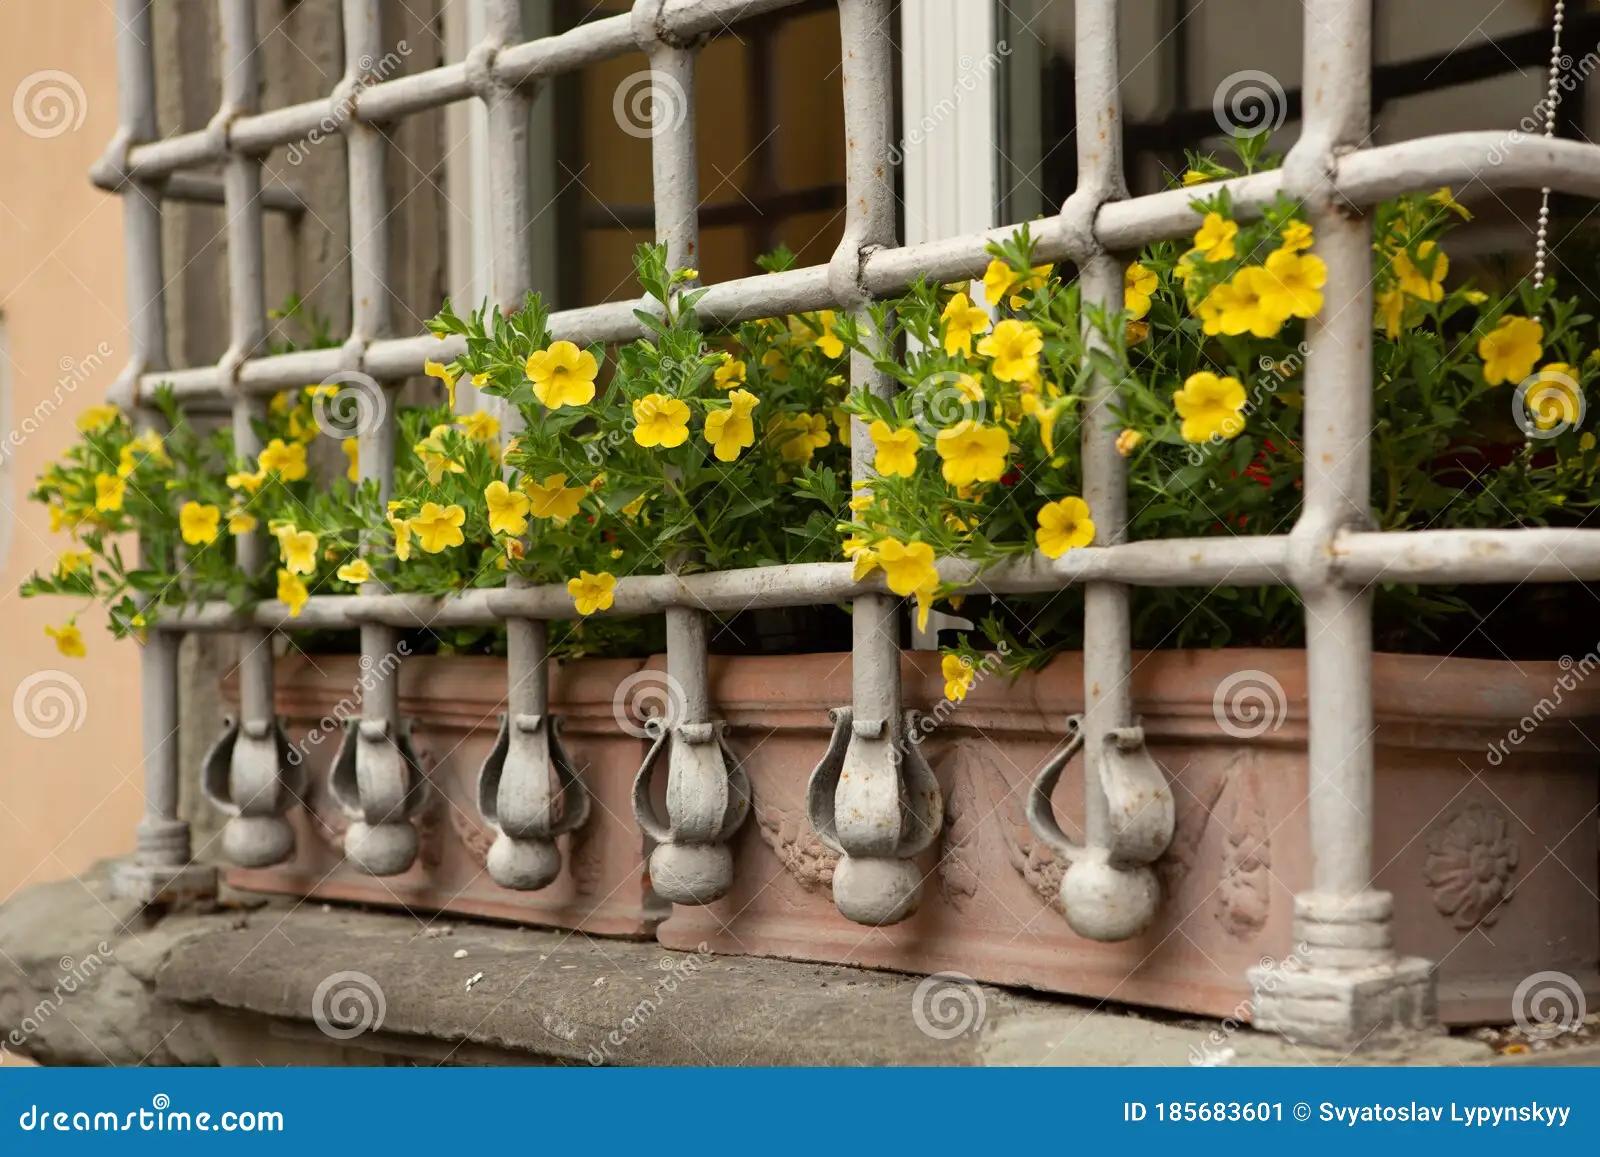 flores amarillas en la ventana - Dónde se filmó flores amarillas en la ventana